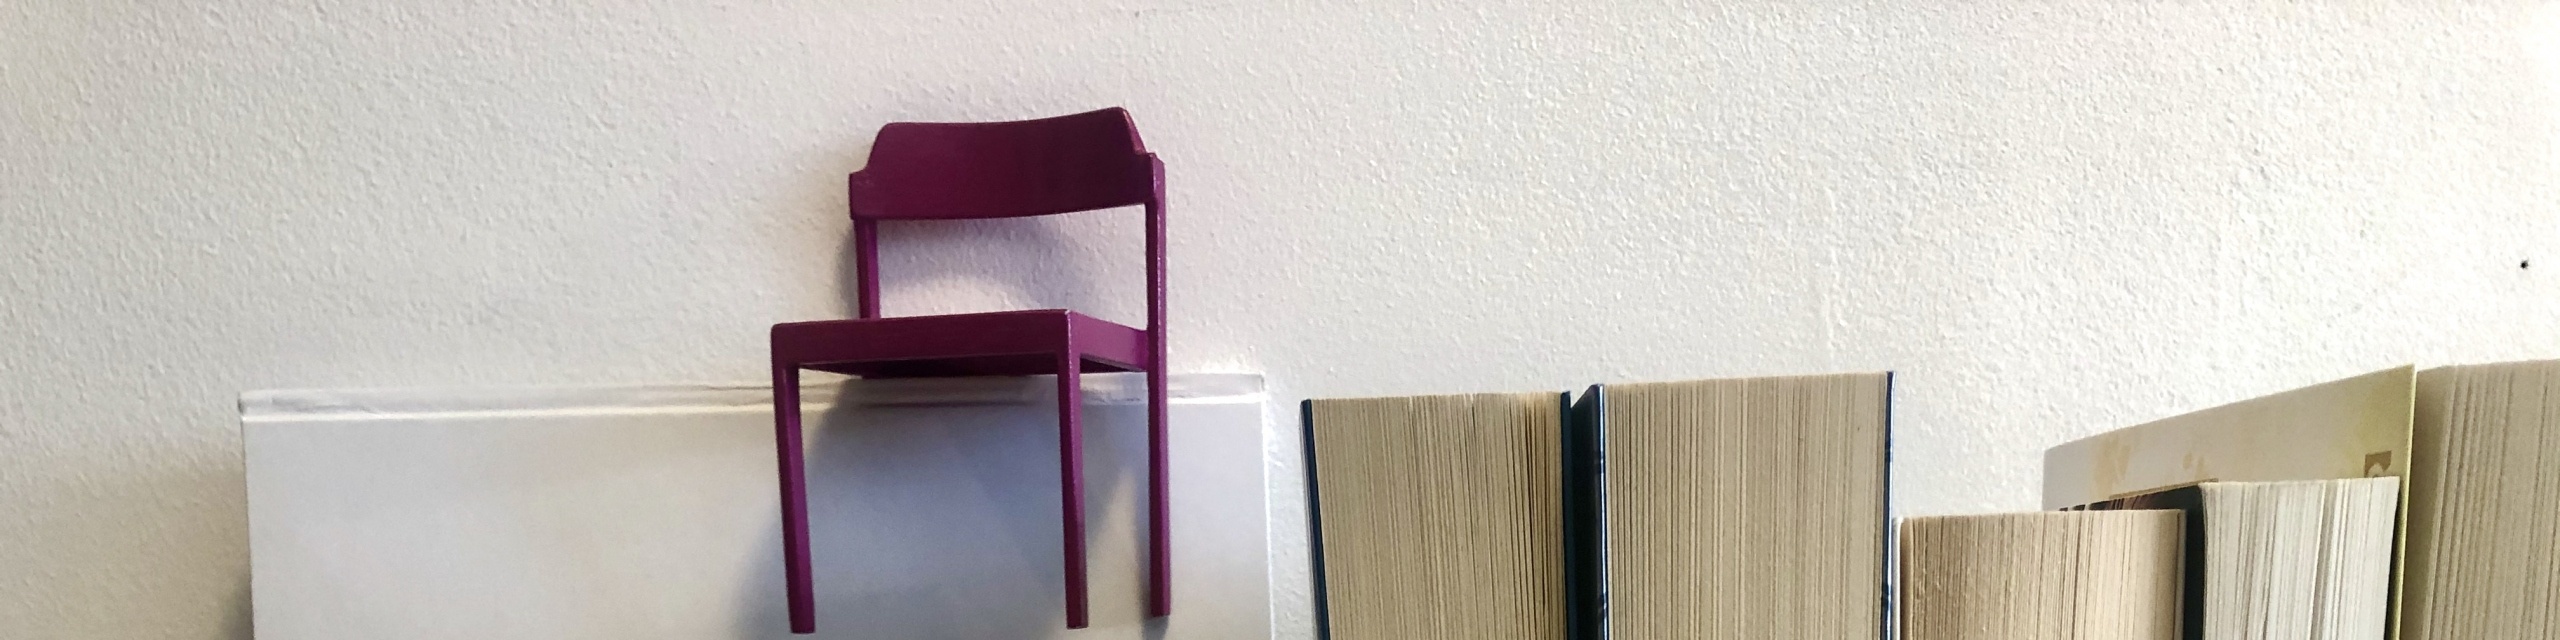 Der pinke Stuhl steht auf hochkant stehenden Büchern.